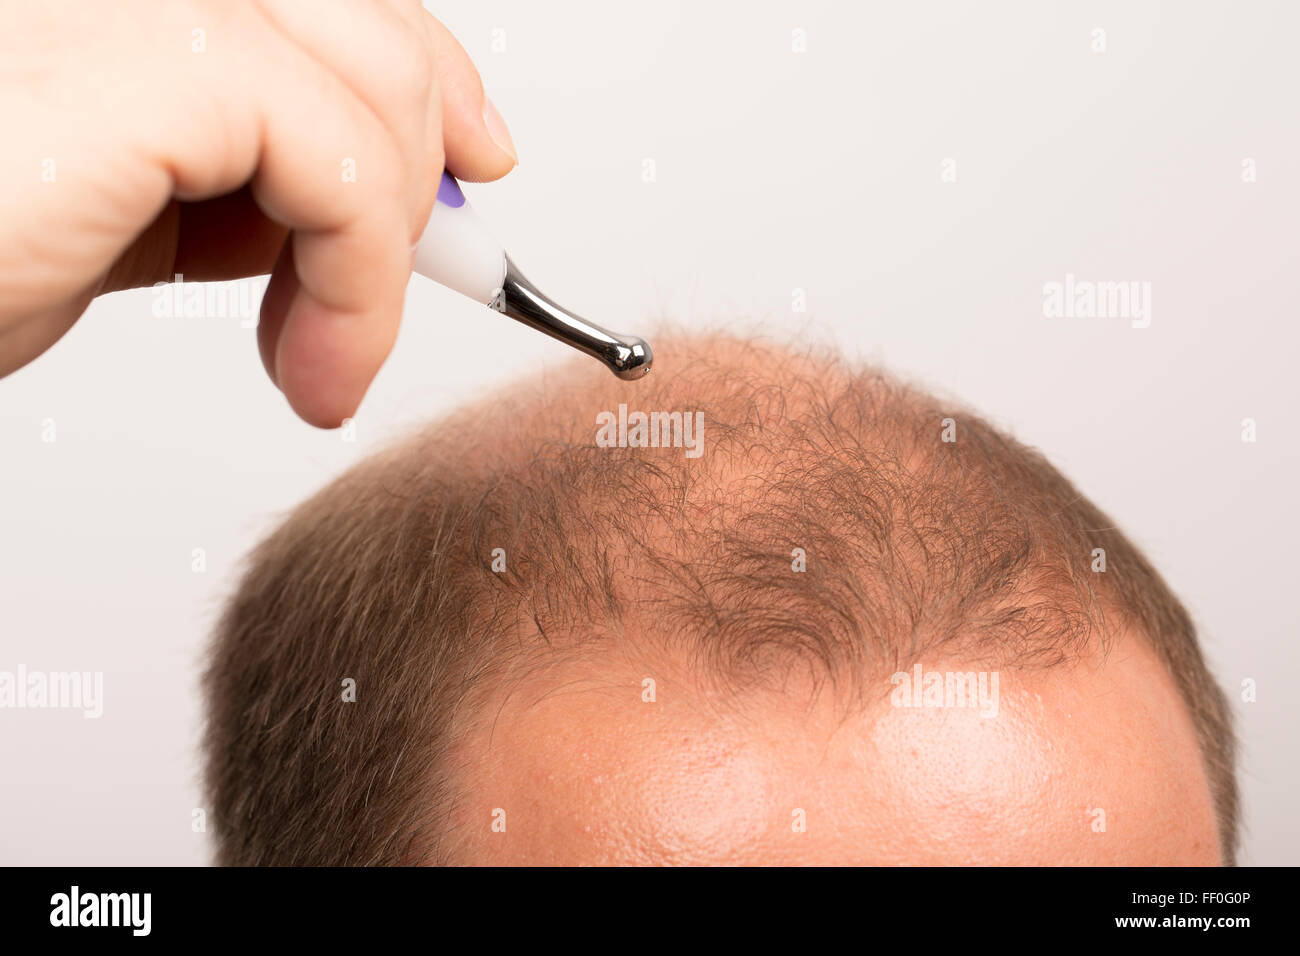 man controls hair loss stress alopecia cancer treatment Stock Photo - Alamy